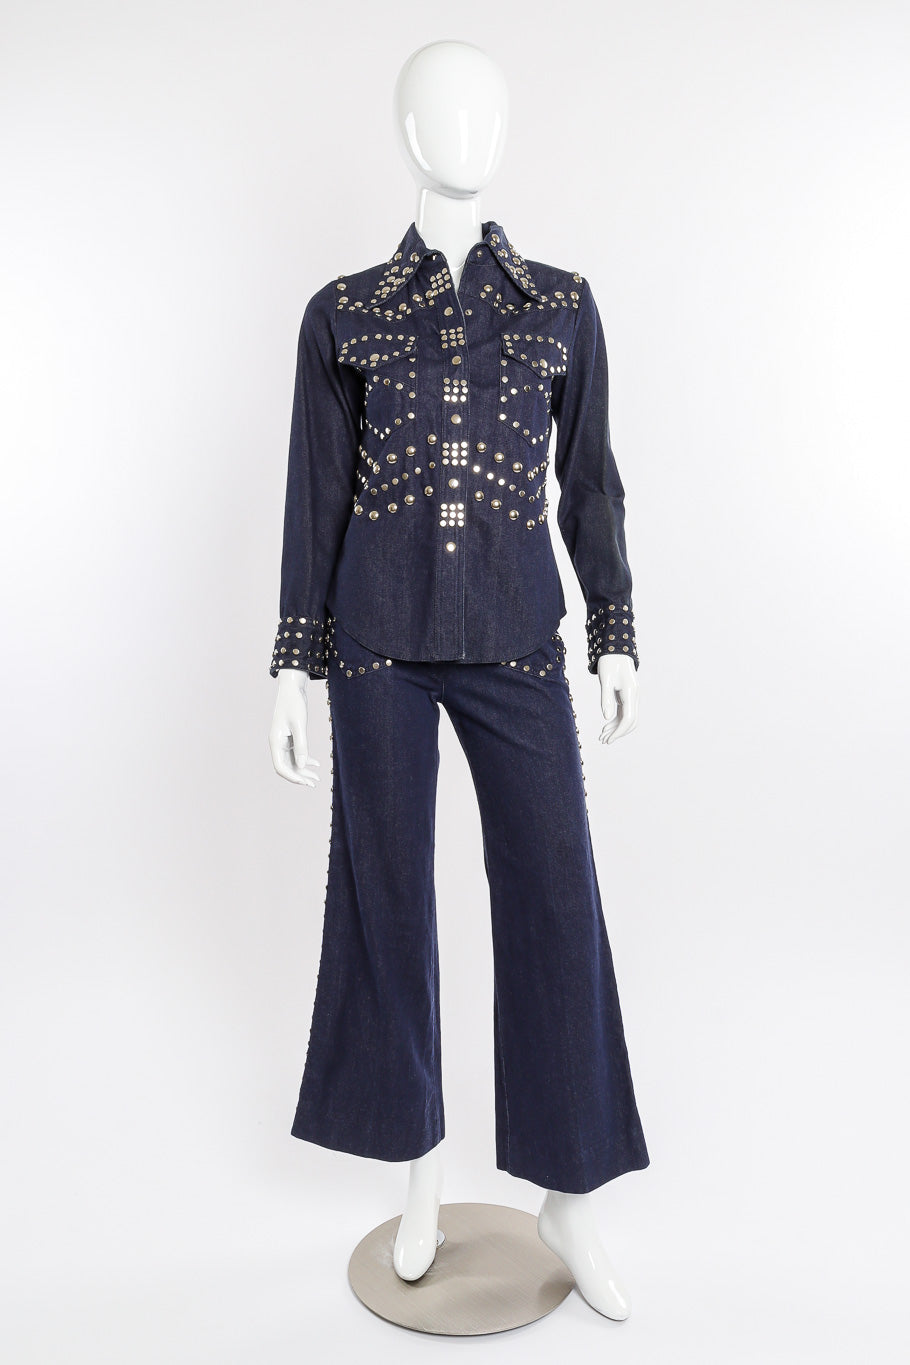 Vintage Allie Flynn Studded Denim Top and Pant Set front view on mannequin @Recessla